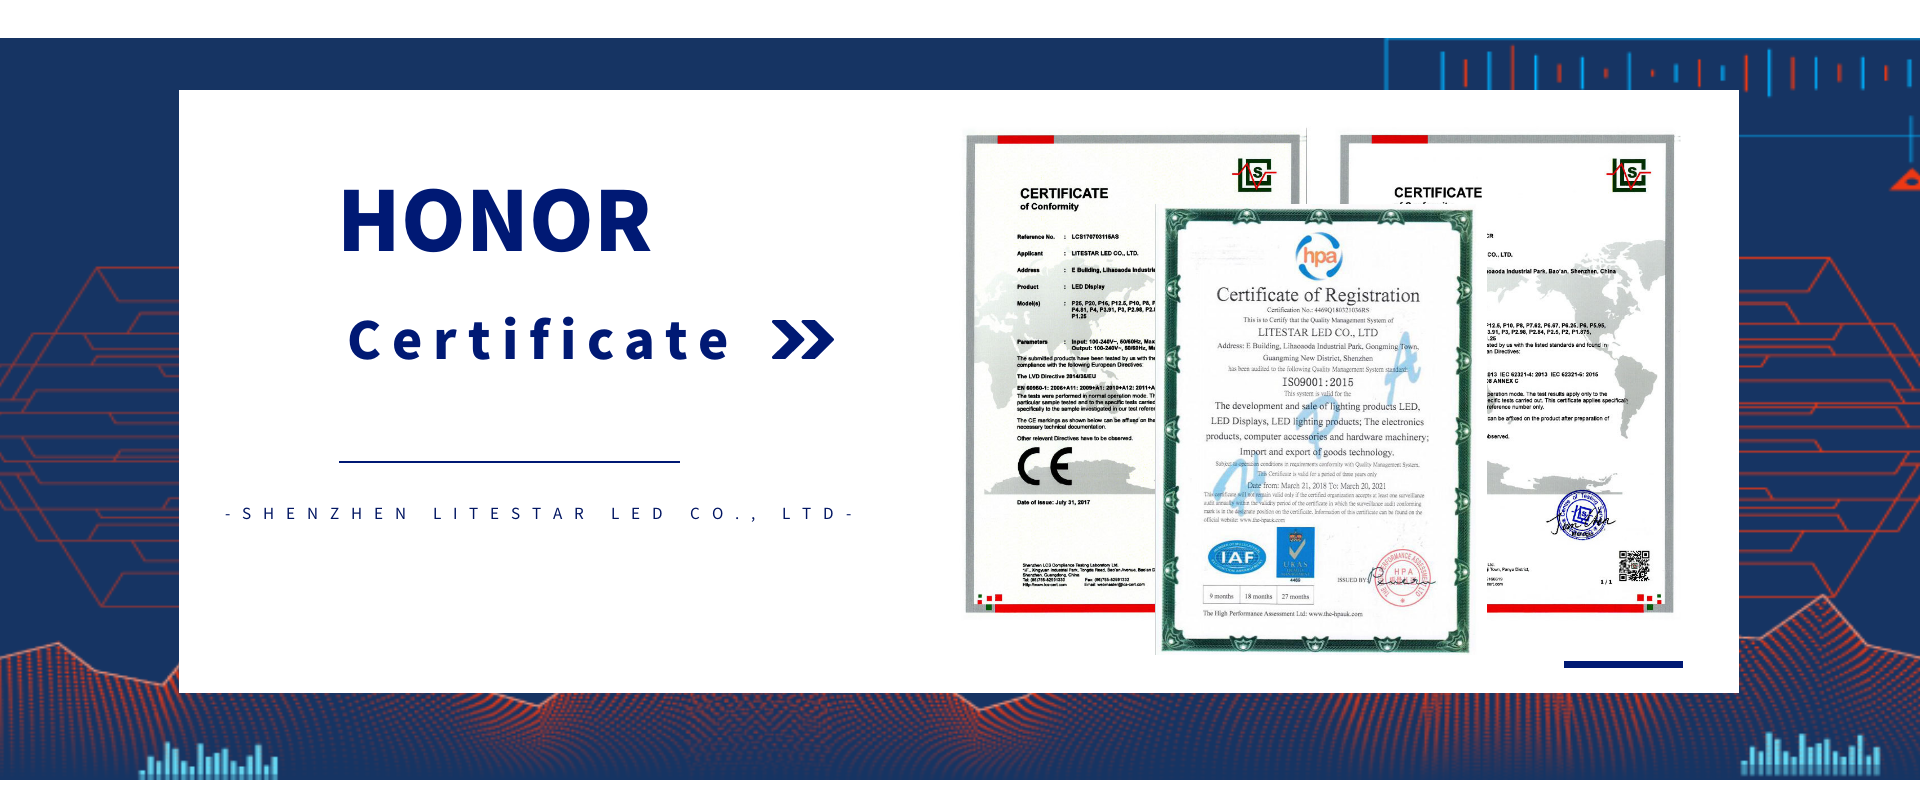 Кваліфікаційний сертифікат